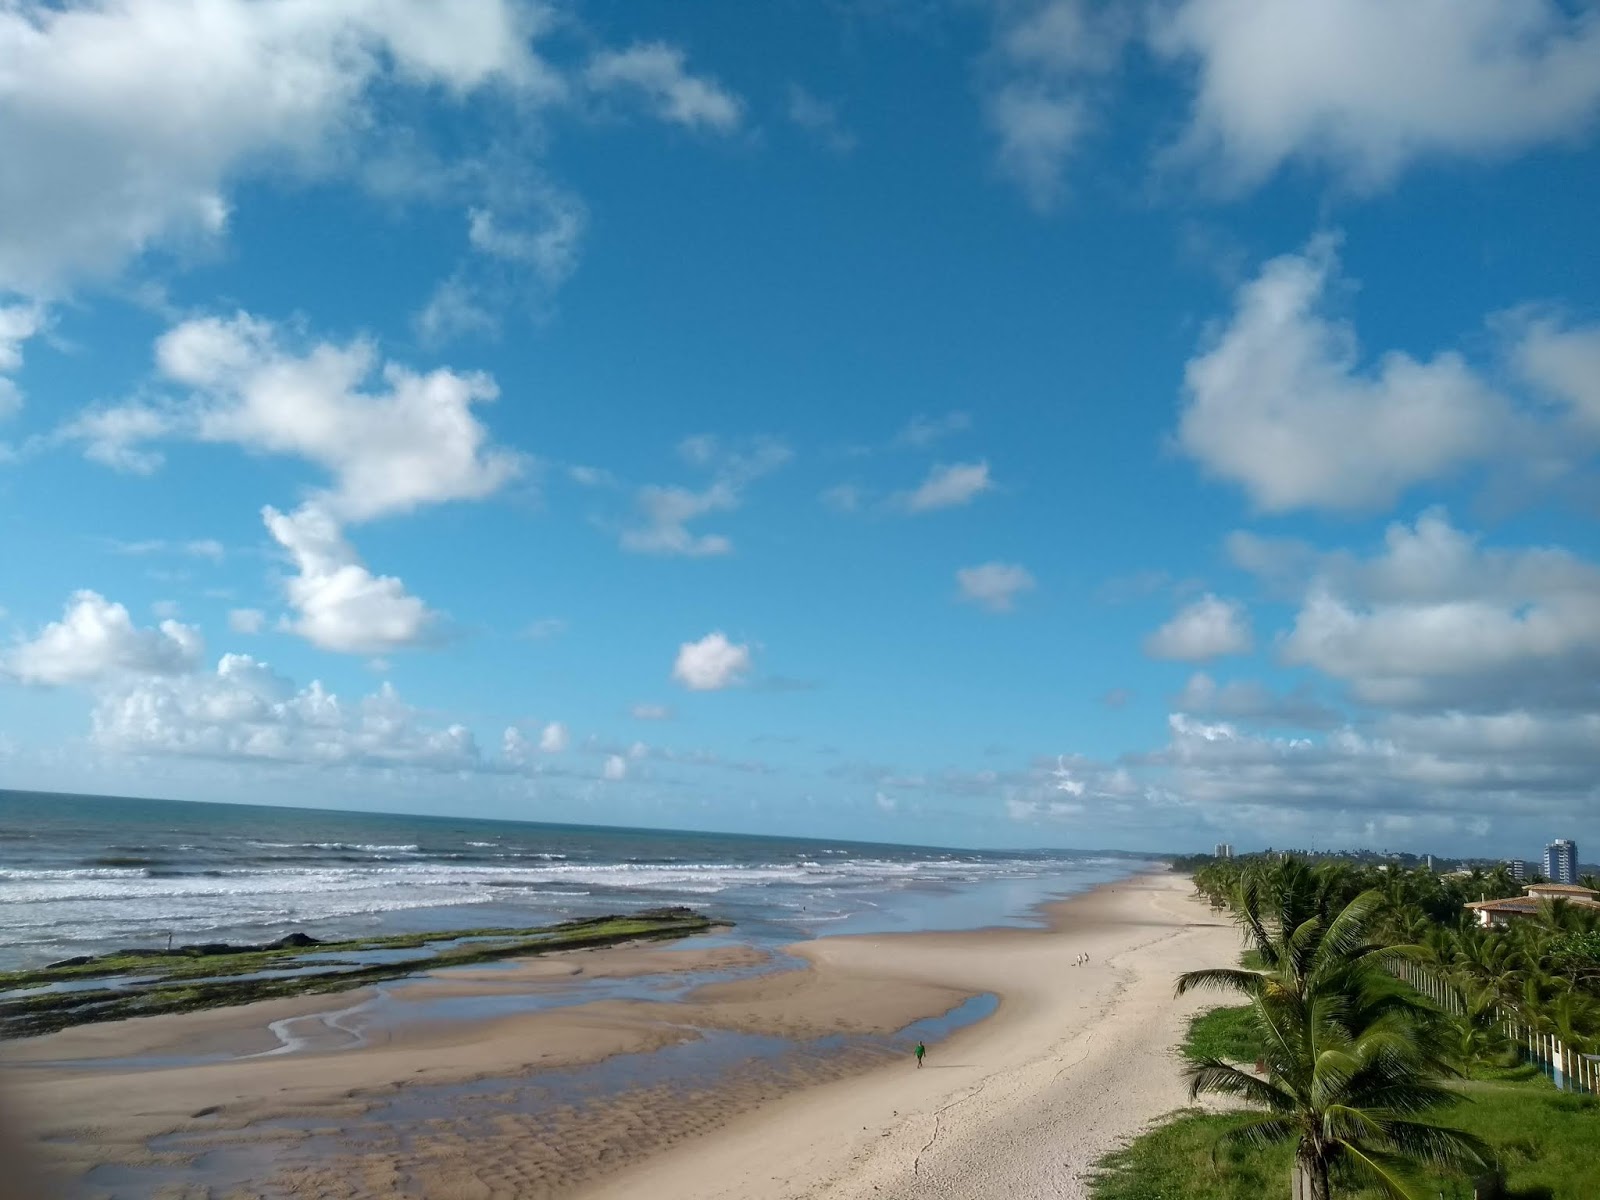 Fotografie cu Praia do Sul - locul popular printre cunoscătorii de relaxare